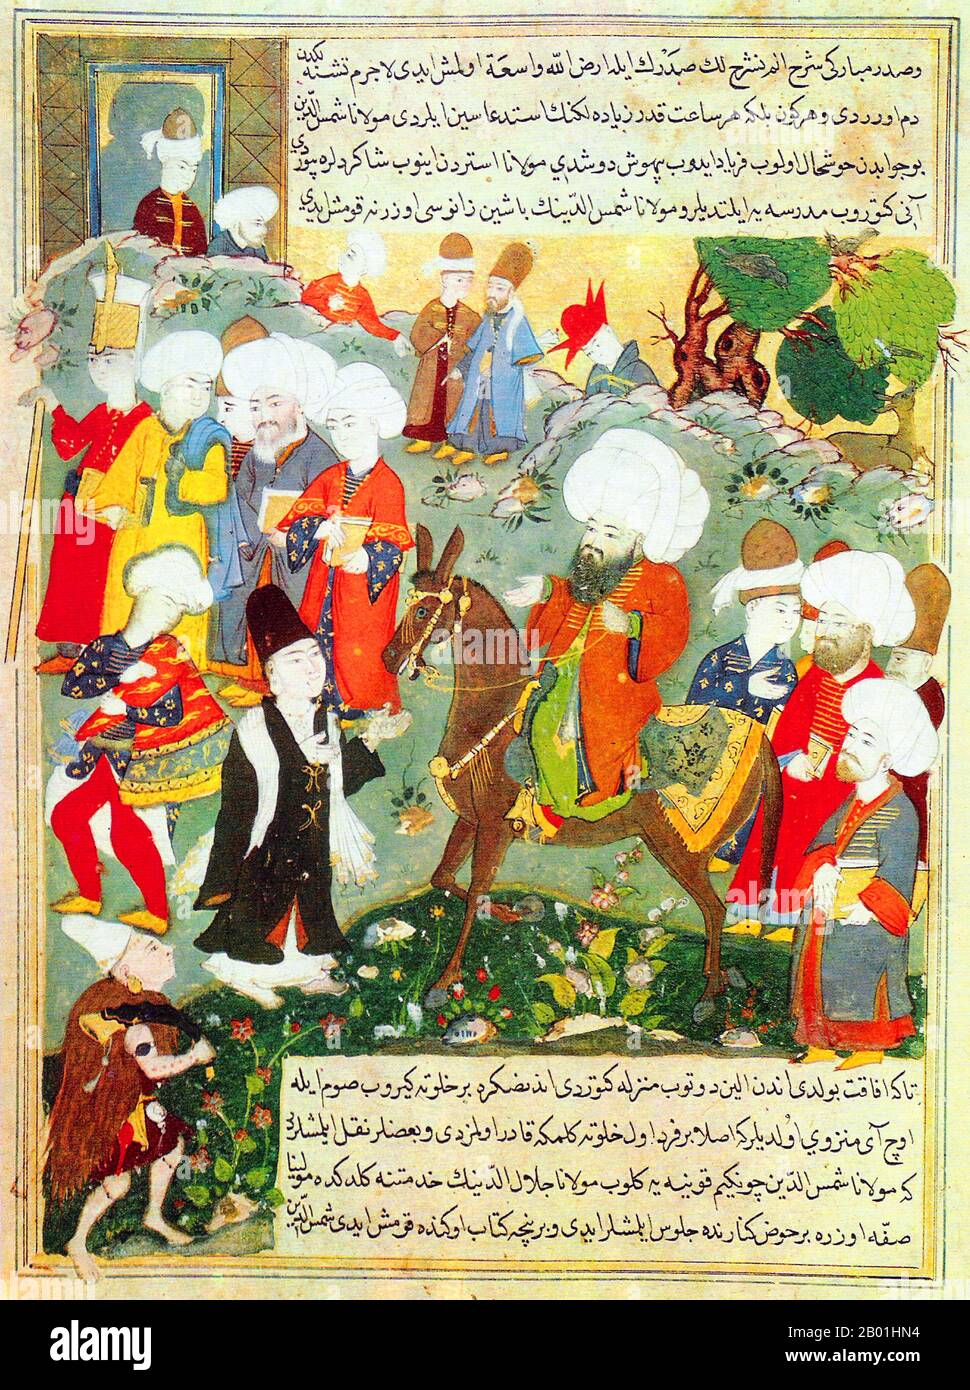 Afghanistan/Iran: Der persische Dichter Rumi, dargestellt auf einem Pony im türkischen "Jâmi al-siyar" von Mohammad Tahir Suhravardî, c. 1600. Jalāl ad-Dīn Muḥammad Balkhī (30. September 1207 13. bis 17. Dezember 1273), auch bekannt als Jalāl ad-Dīn Muḥammad Rūmī und in der Türkei allgemein bekannt als Mevlānā und in Iran und Afghanistan als Mawlānā, aber in der englischsprachigen Welt einfach als Rumi bekannt, war ein persischer muslimischer Dichter, Jurist, Theologe und Sufi Mystic. Er wurde in der Provinz Balkh in Afghanistan in einer kleinen Stadt am Fluss Wakhsh in Tadschikistan geboren. Stockfoto